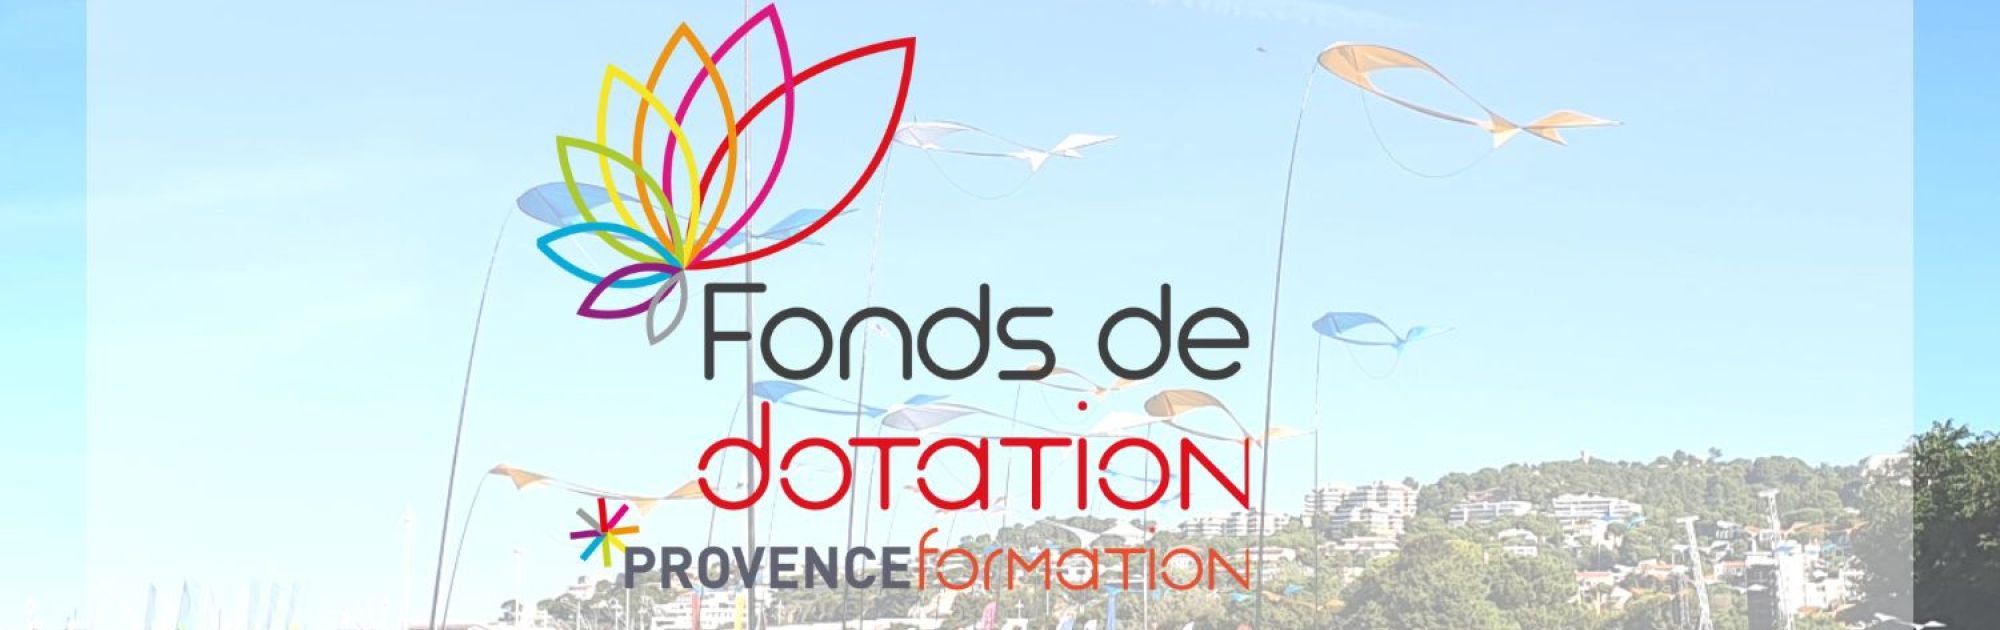 Logo Fonds de Dotation